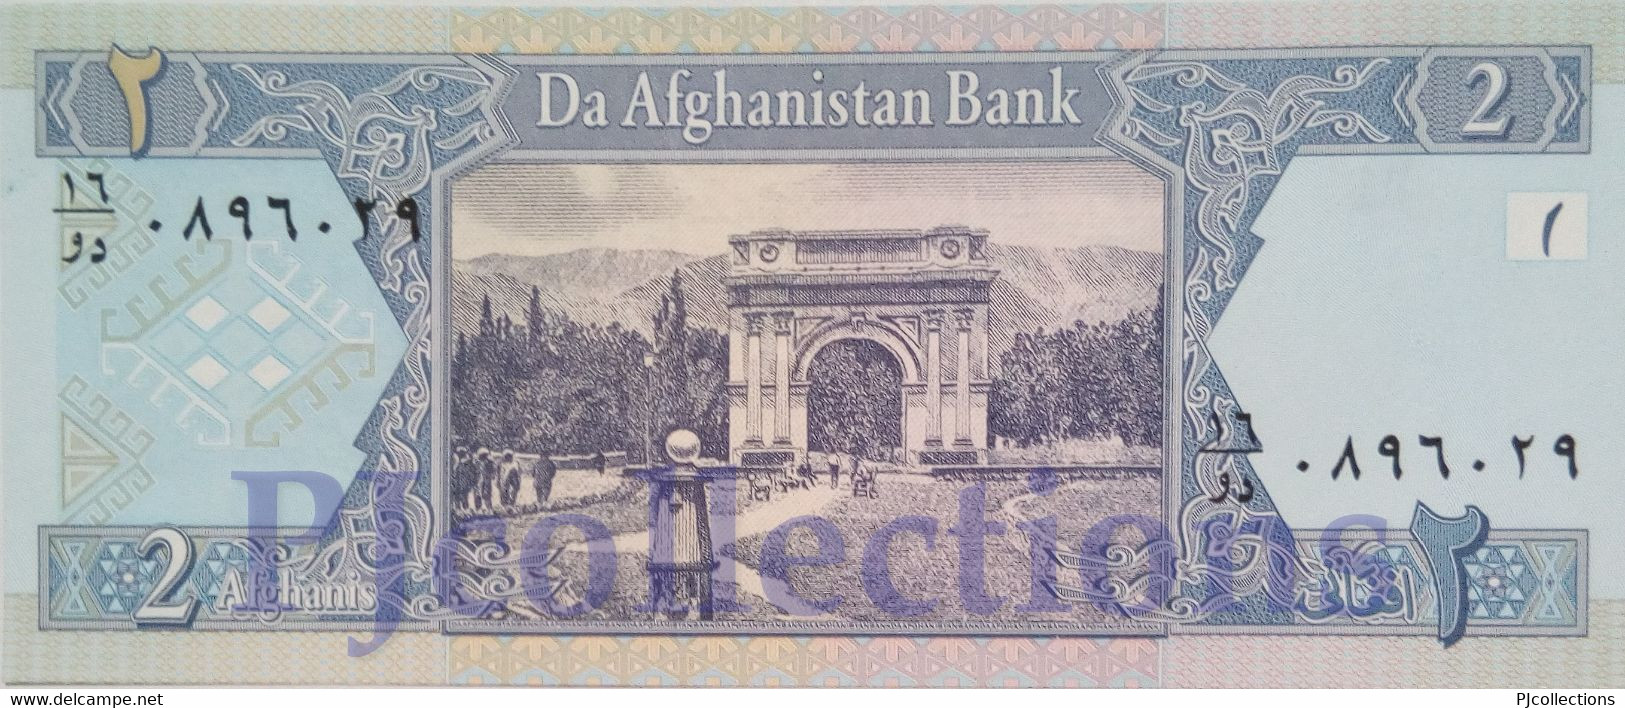 AFGHANISTAN 2 AFGANIS 2002 PICK 65a UNC - Afghanistan